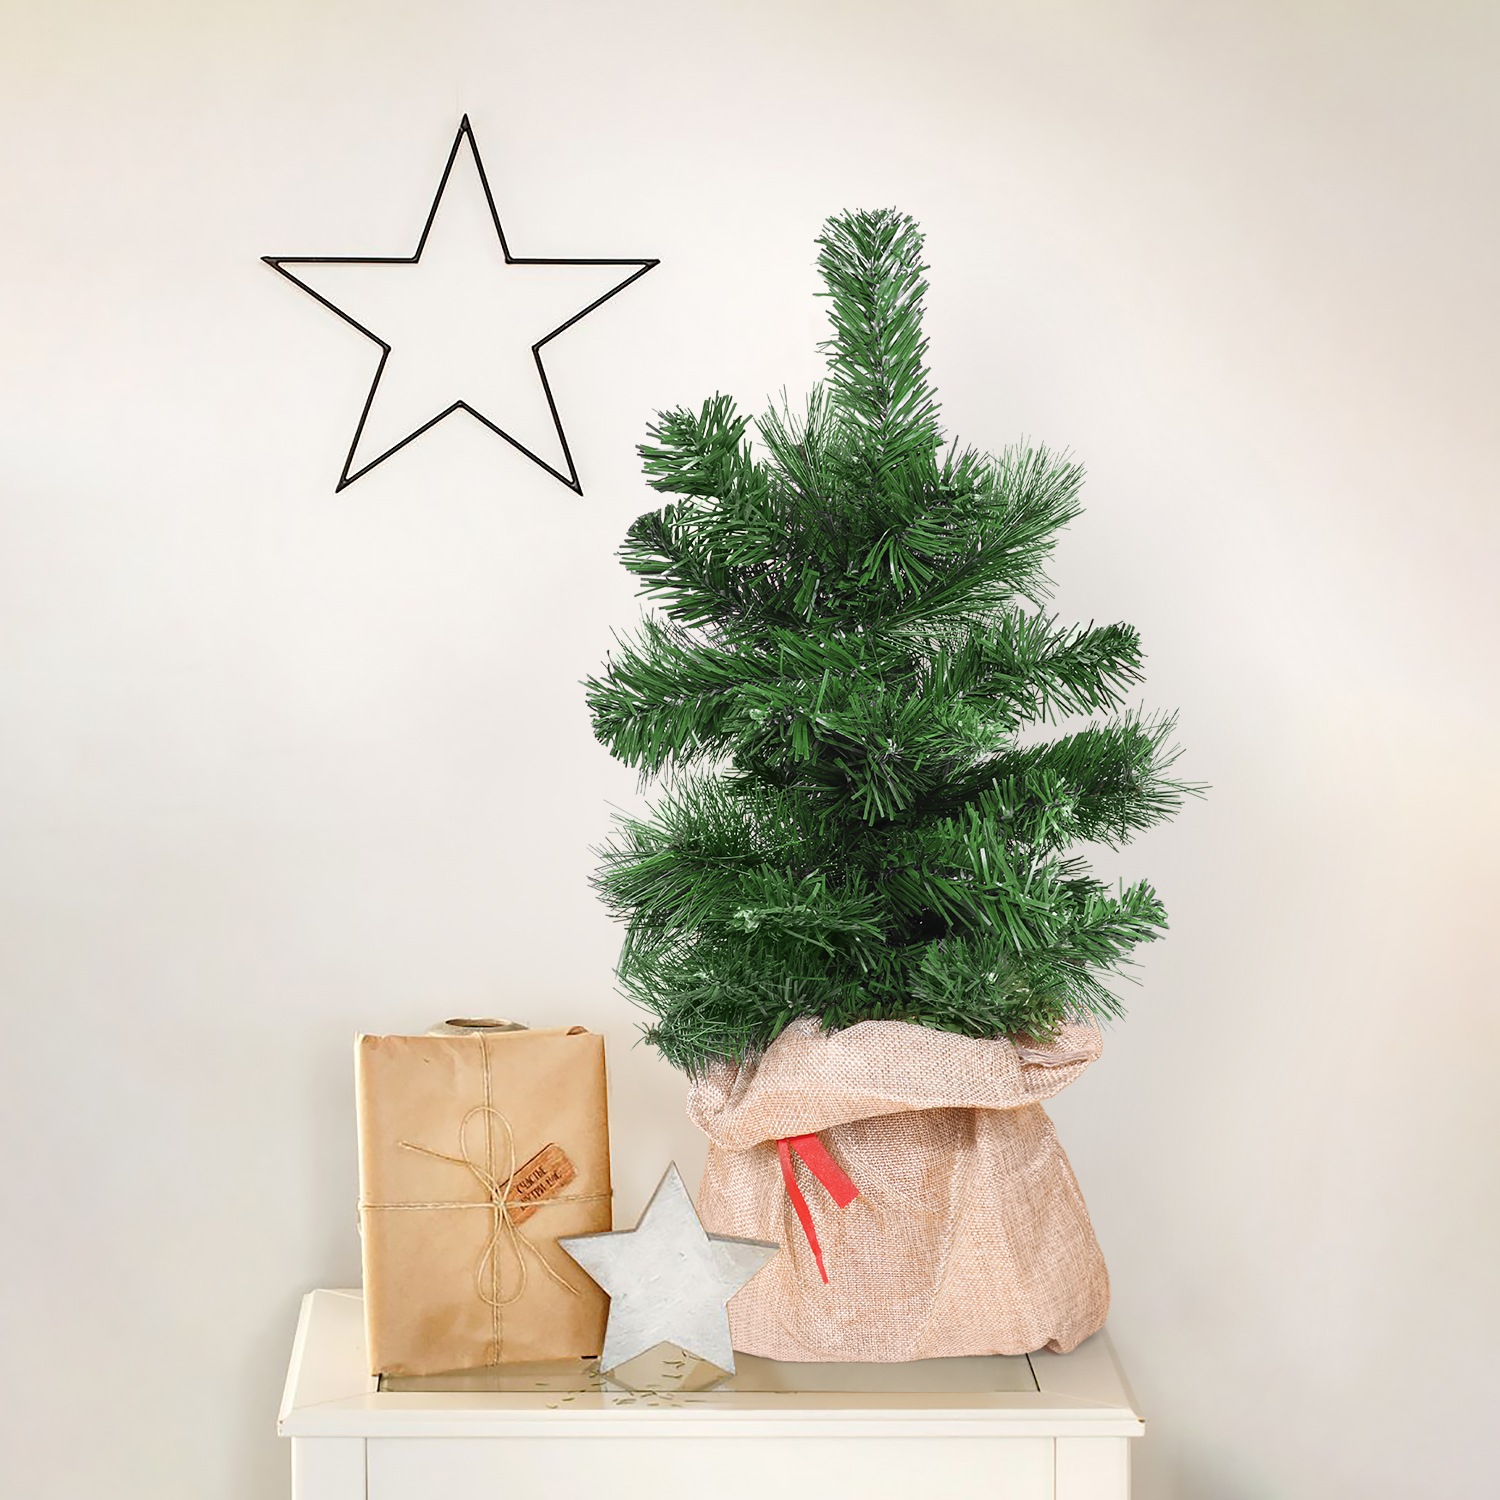 Елка рождественская Guan Arts/3 Way в мешке 50 см, цвет зеленый - фото 3